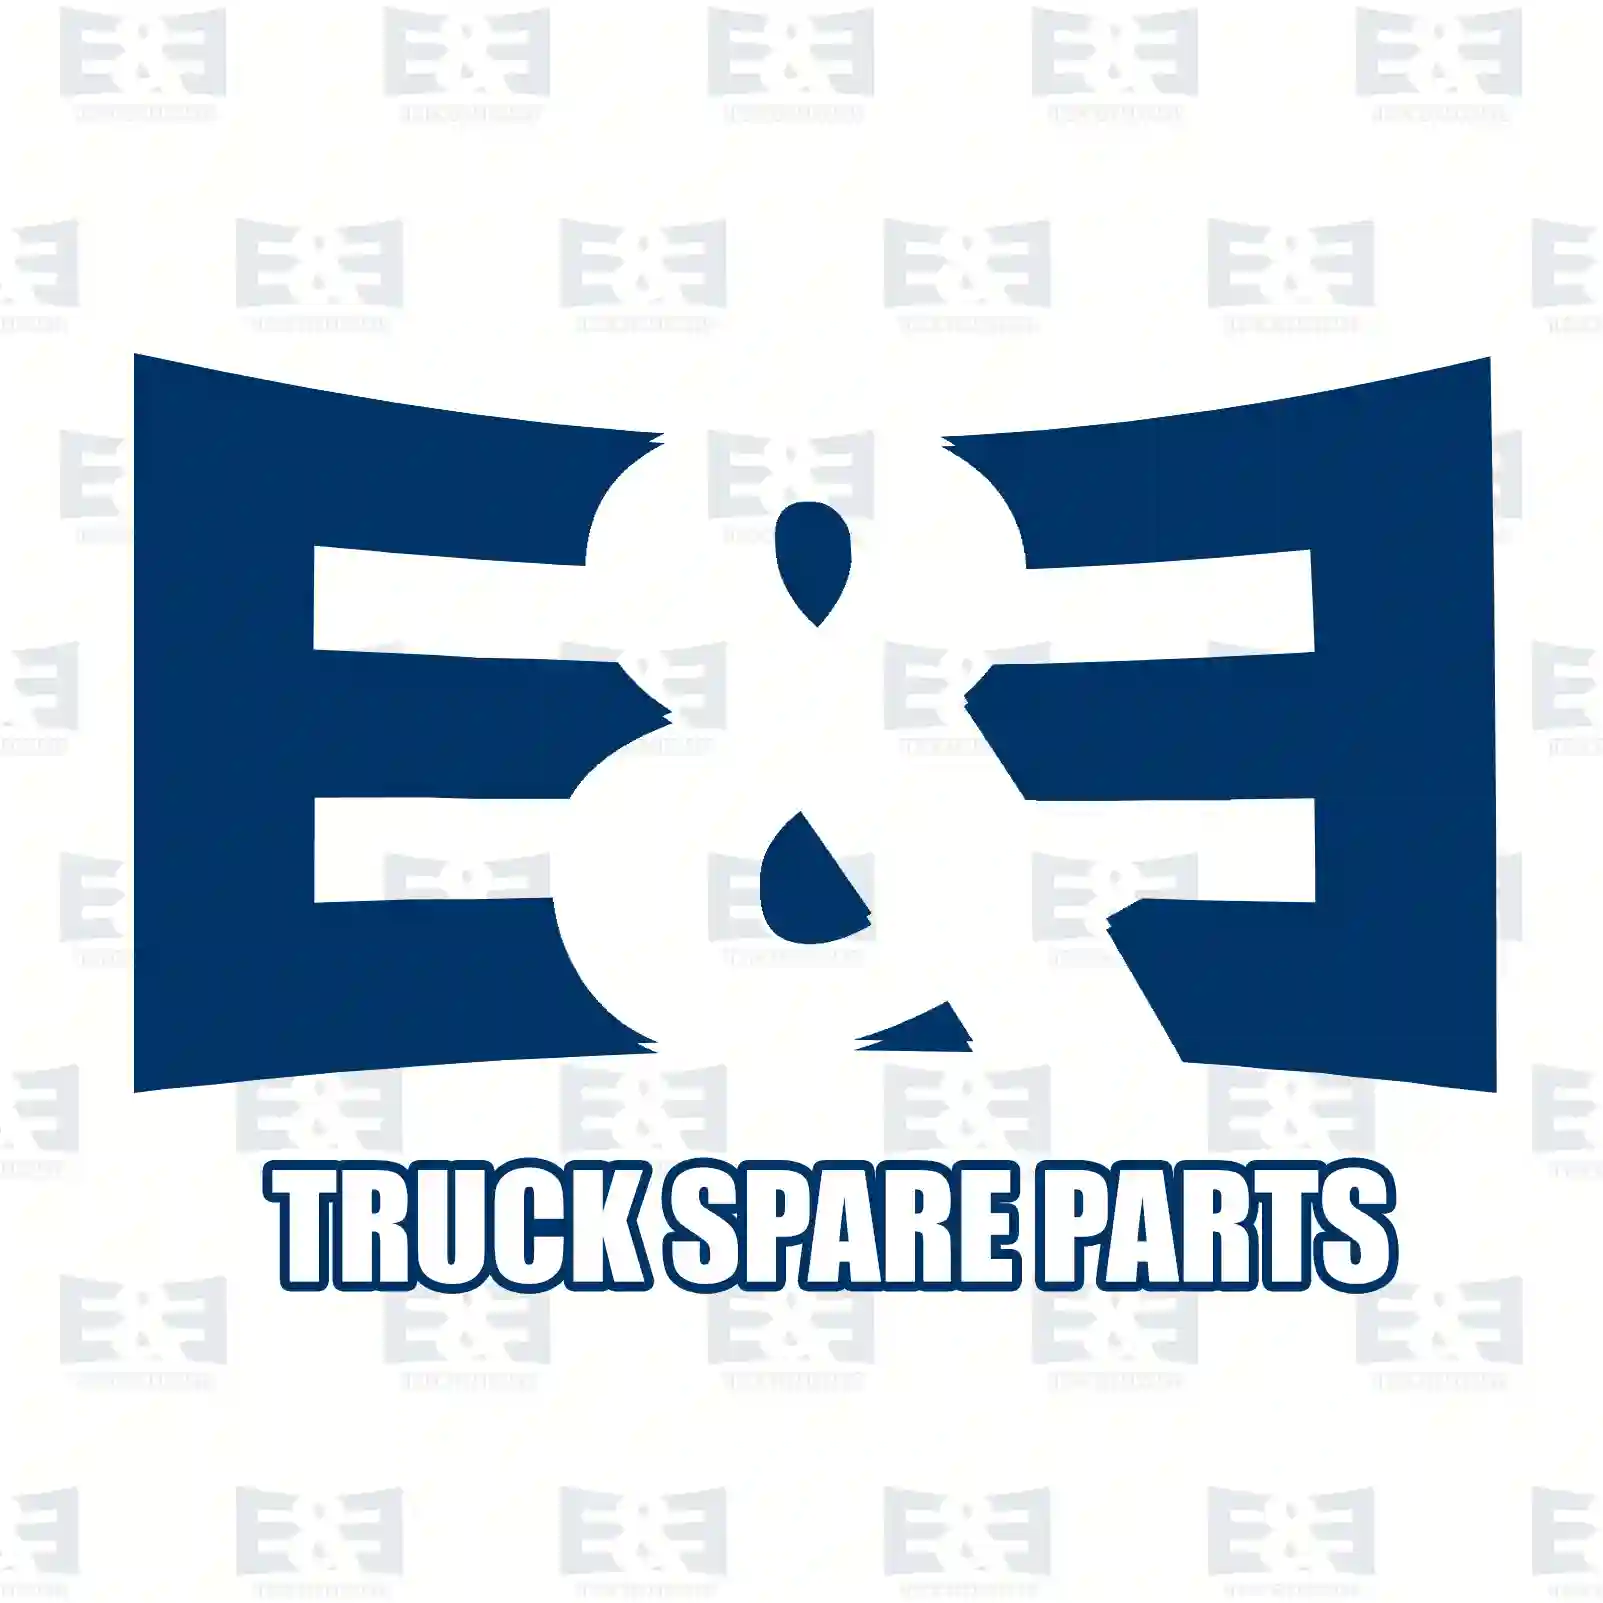 Thrust washer, 2E2284986, 4003320062, 81442150016, 3863320062 ||  2E2284986 E&E Truck Spare Parts | Truck Spare Parts, Auotomotive Spare Parts Thrust washer, 2E2284986, 4003320062, 81442150016, 3863320062 ||  2E2284986 E&E Truck Spare Parts | Truck Spare Parts, Auotomotive Spare Parts